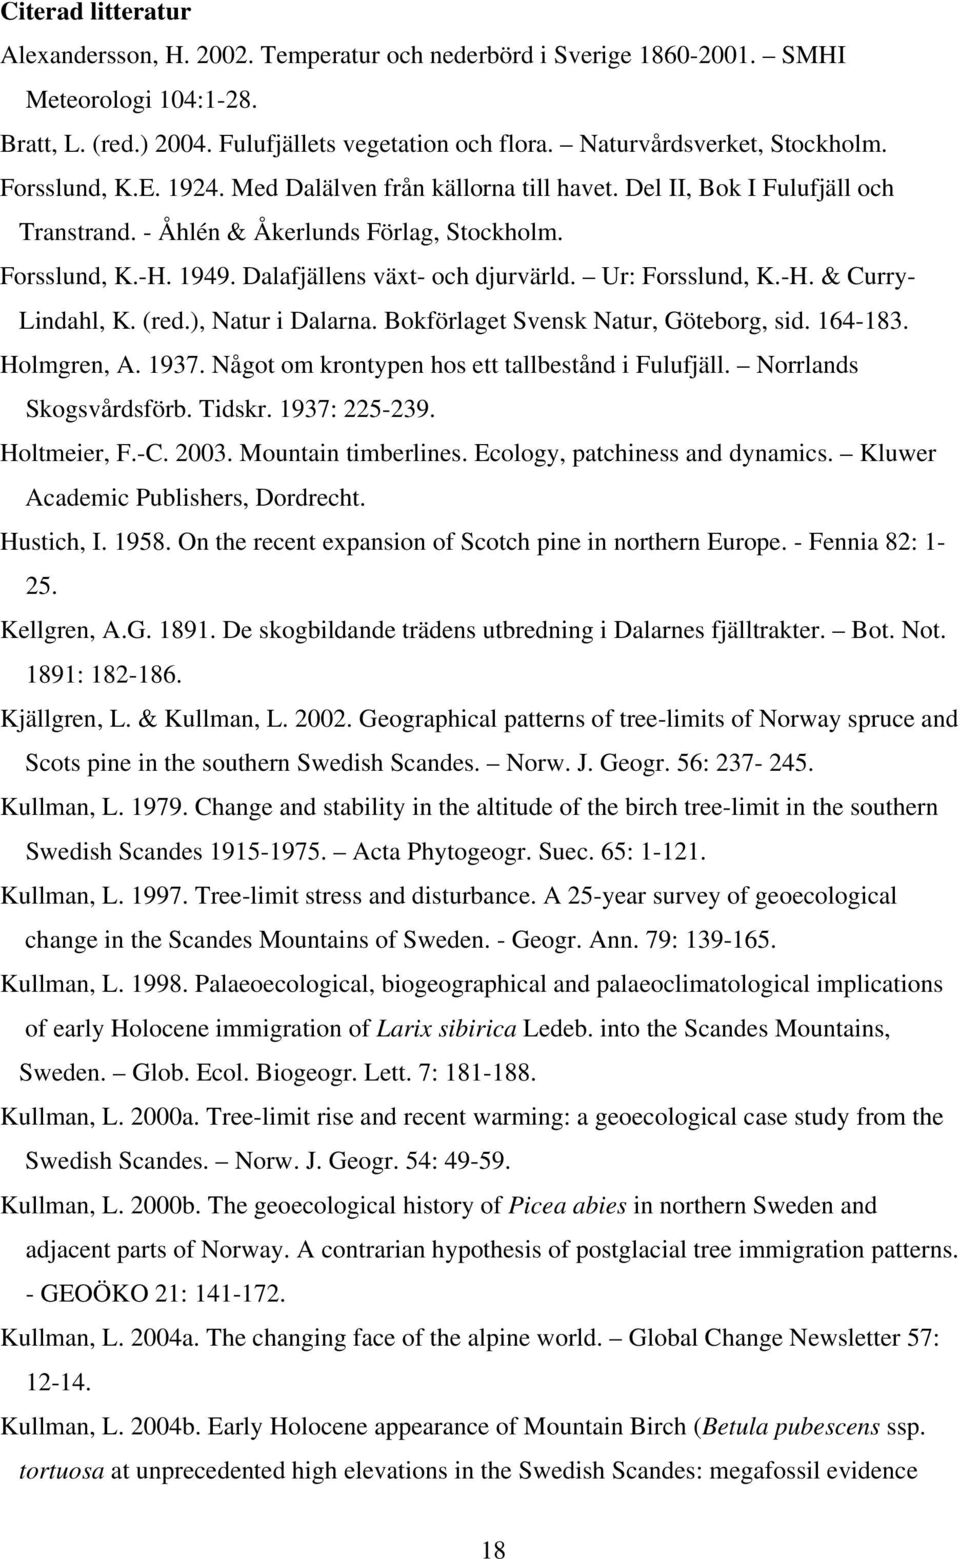 Dalafjällens växt- och djurvärld. Ur: Forsslund, K.-H. & Curry- Lindahl, K. (red.), Natur i Dalarna. Bokförlaget Svensk Natur, Göteborg, sid. 164-183. Holmgren, A. 1937.